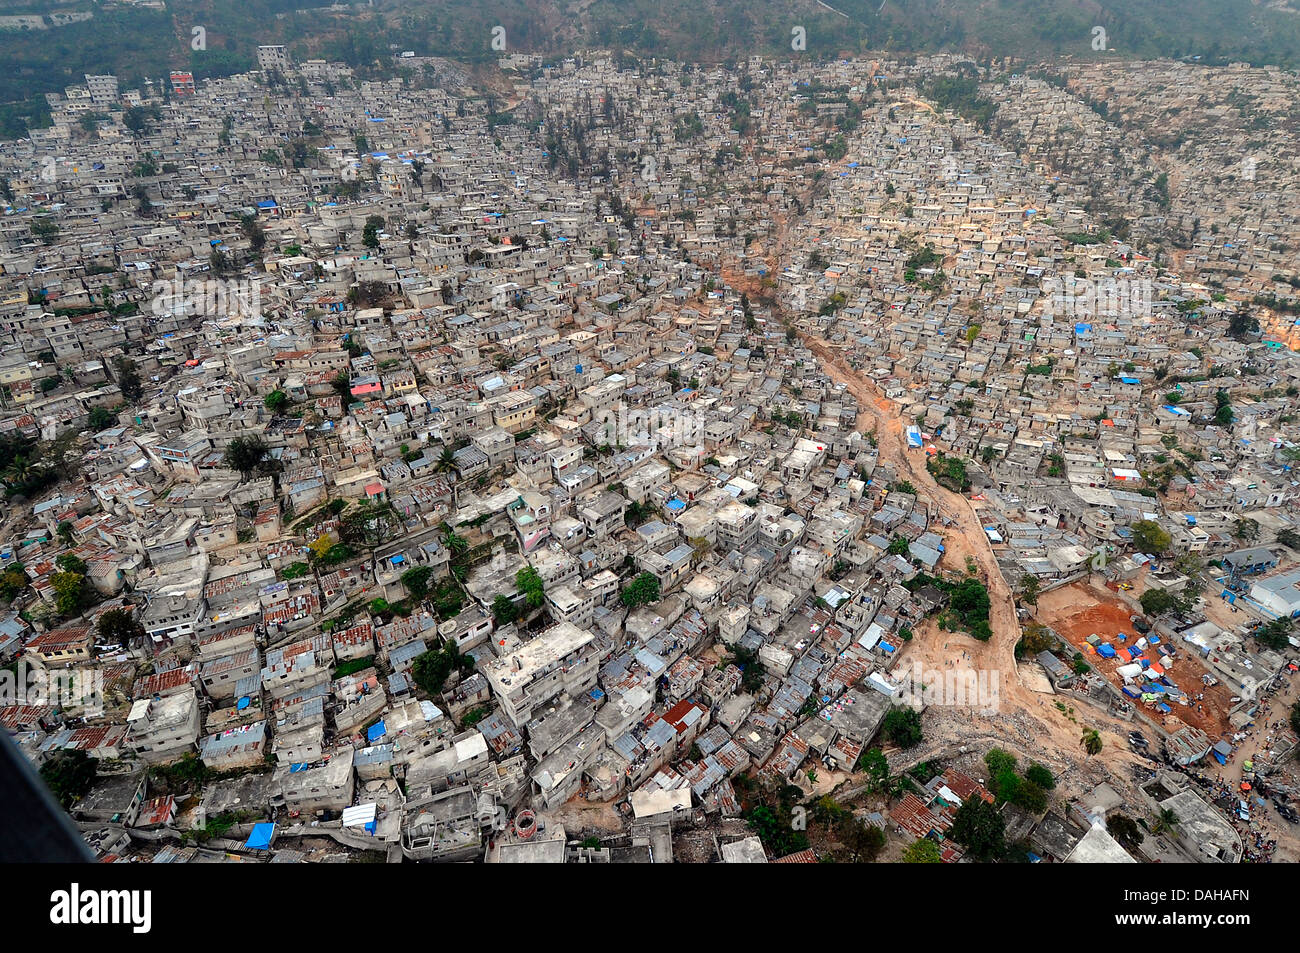 Vista aerea di edifici danneggiati a seguito di un terremoto di magnitudine 7.0 che ha ucciso 220.000 persone Marzo 16, 2010 a Port-au-Prince, Haiti. Foto Stock